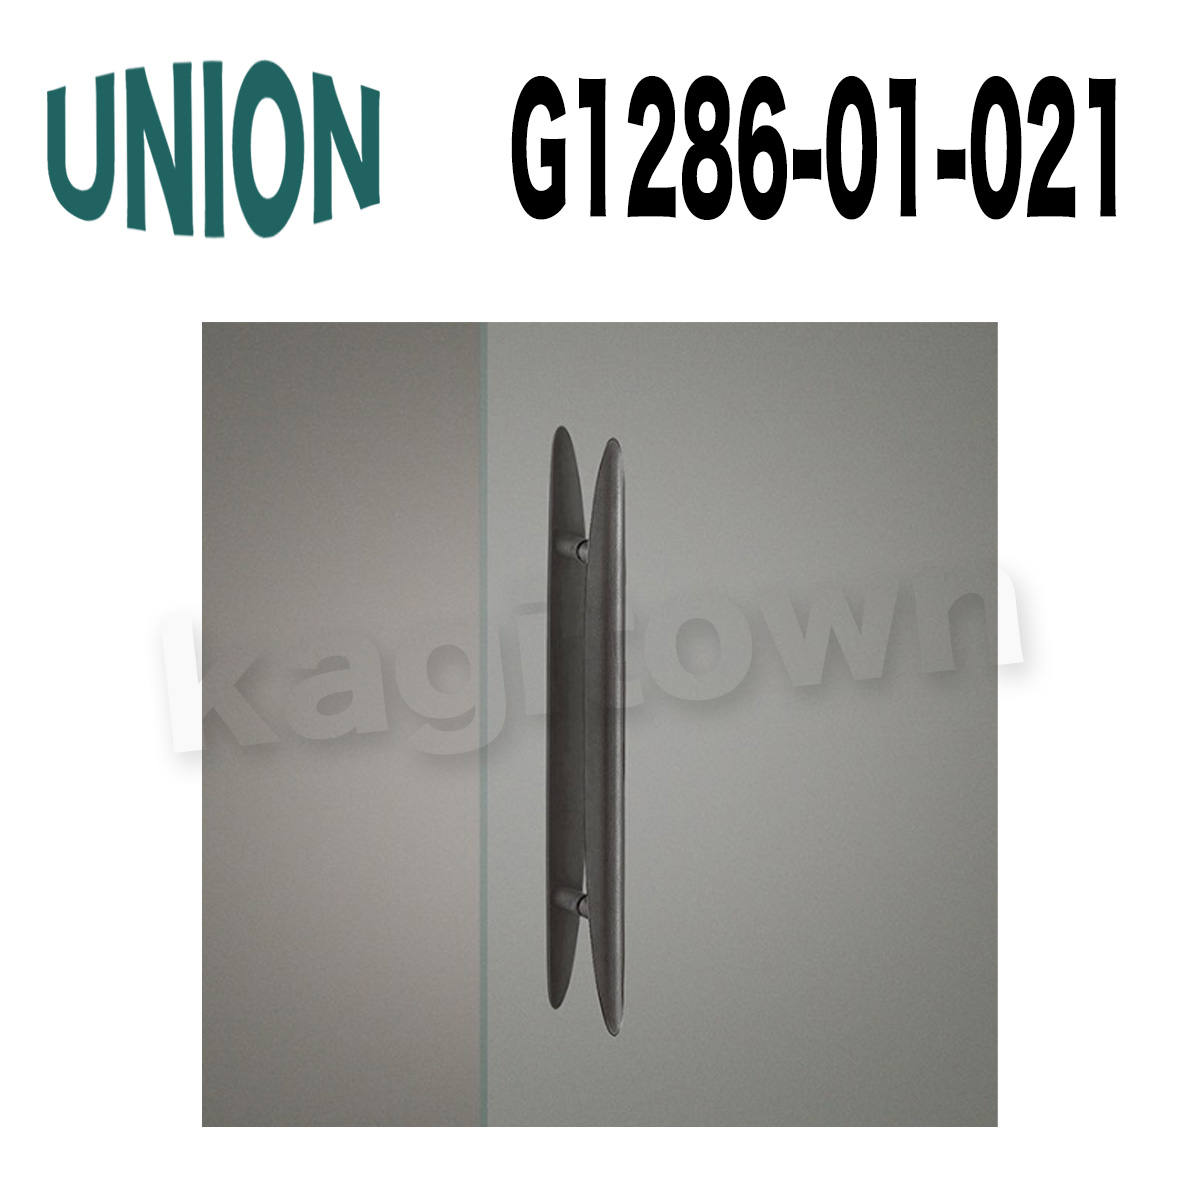 UNION【ユニオン】G1286-01-023[ドアハンドル]押し棒 ガラスドア